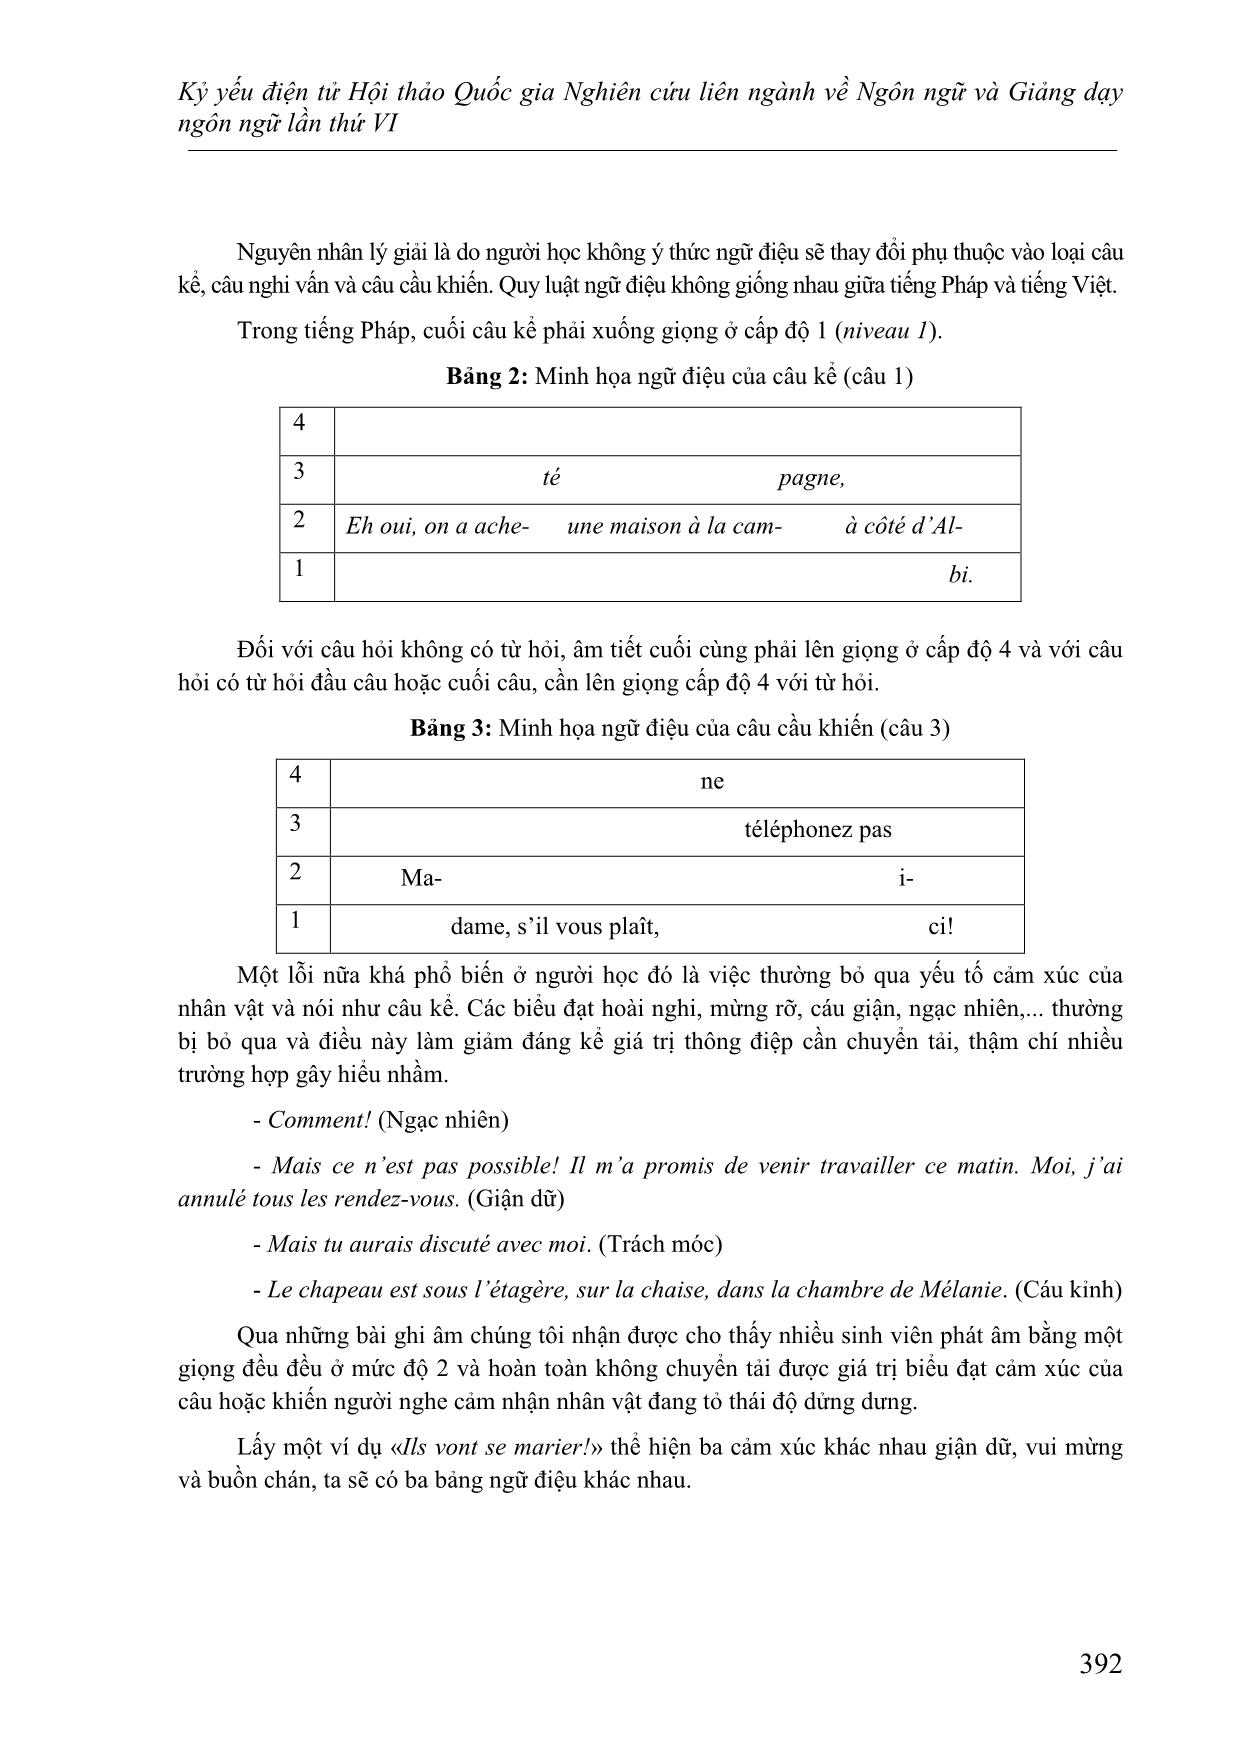 Nghiên cứu lỗi phát âm của người Việt học tiếng Pháp nhìn từ góc độ ngữ âm - âm vị học trang 5